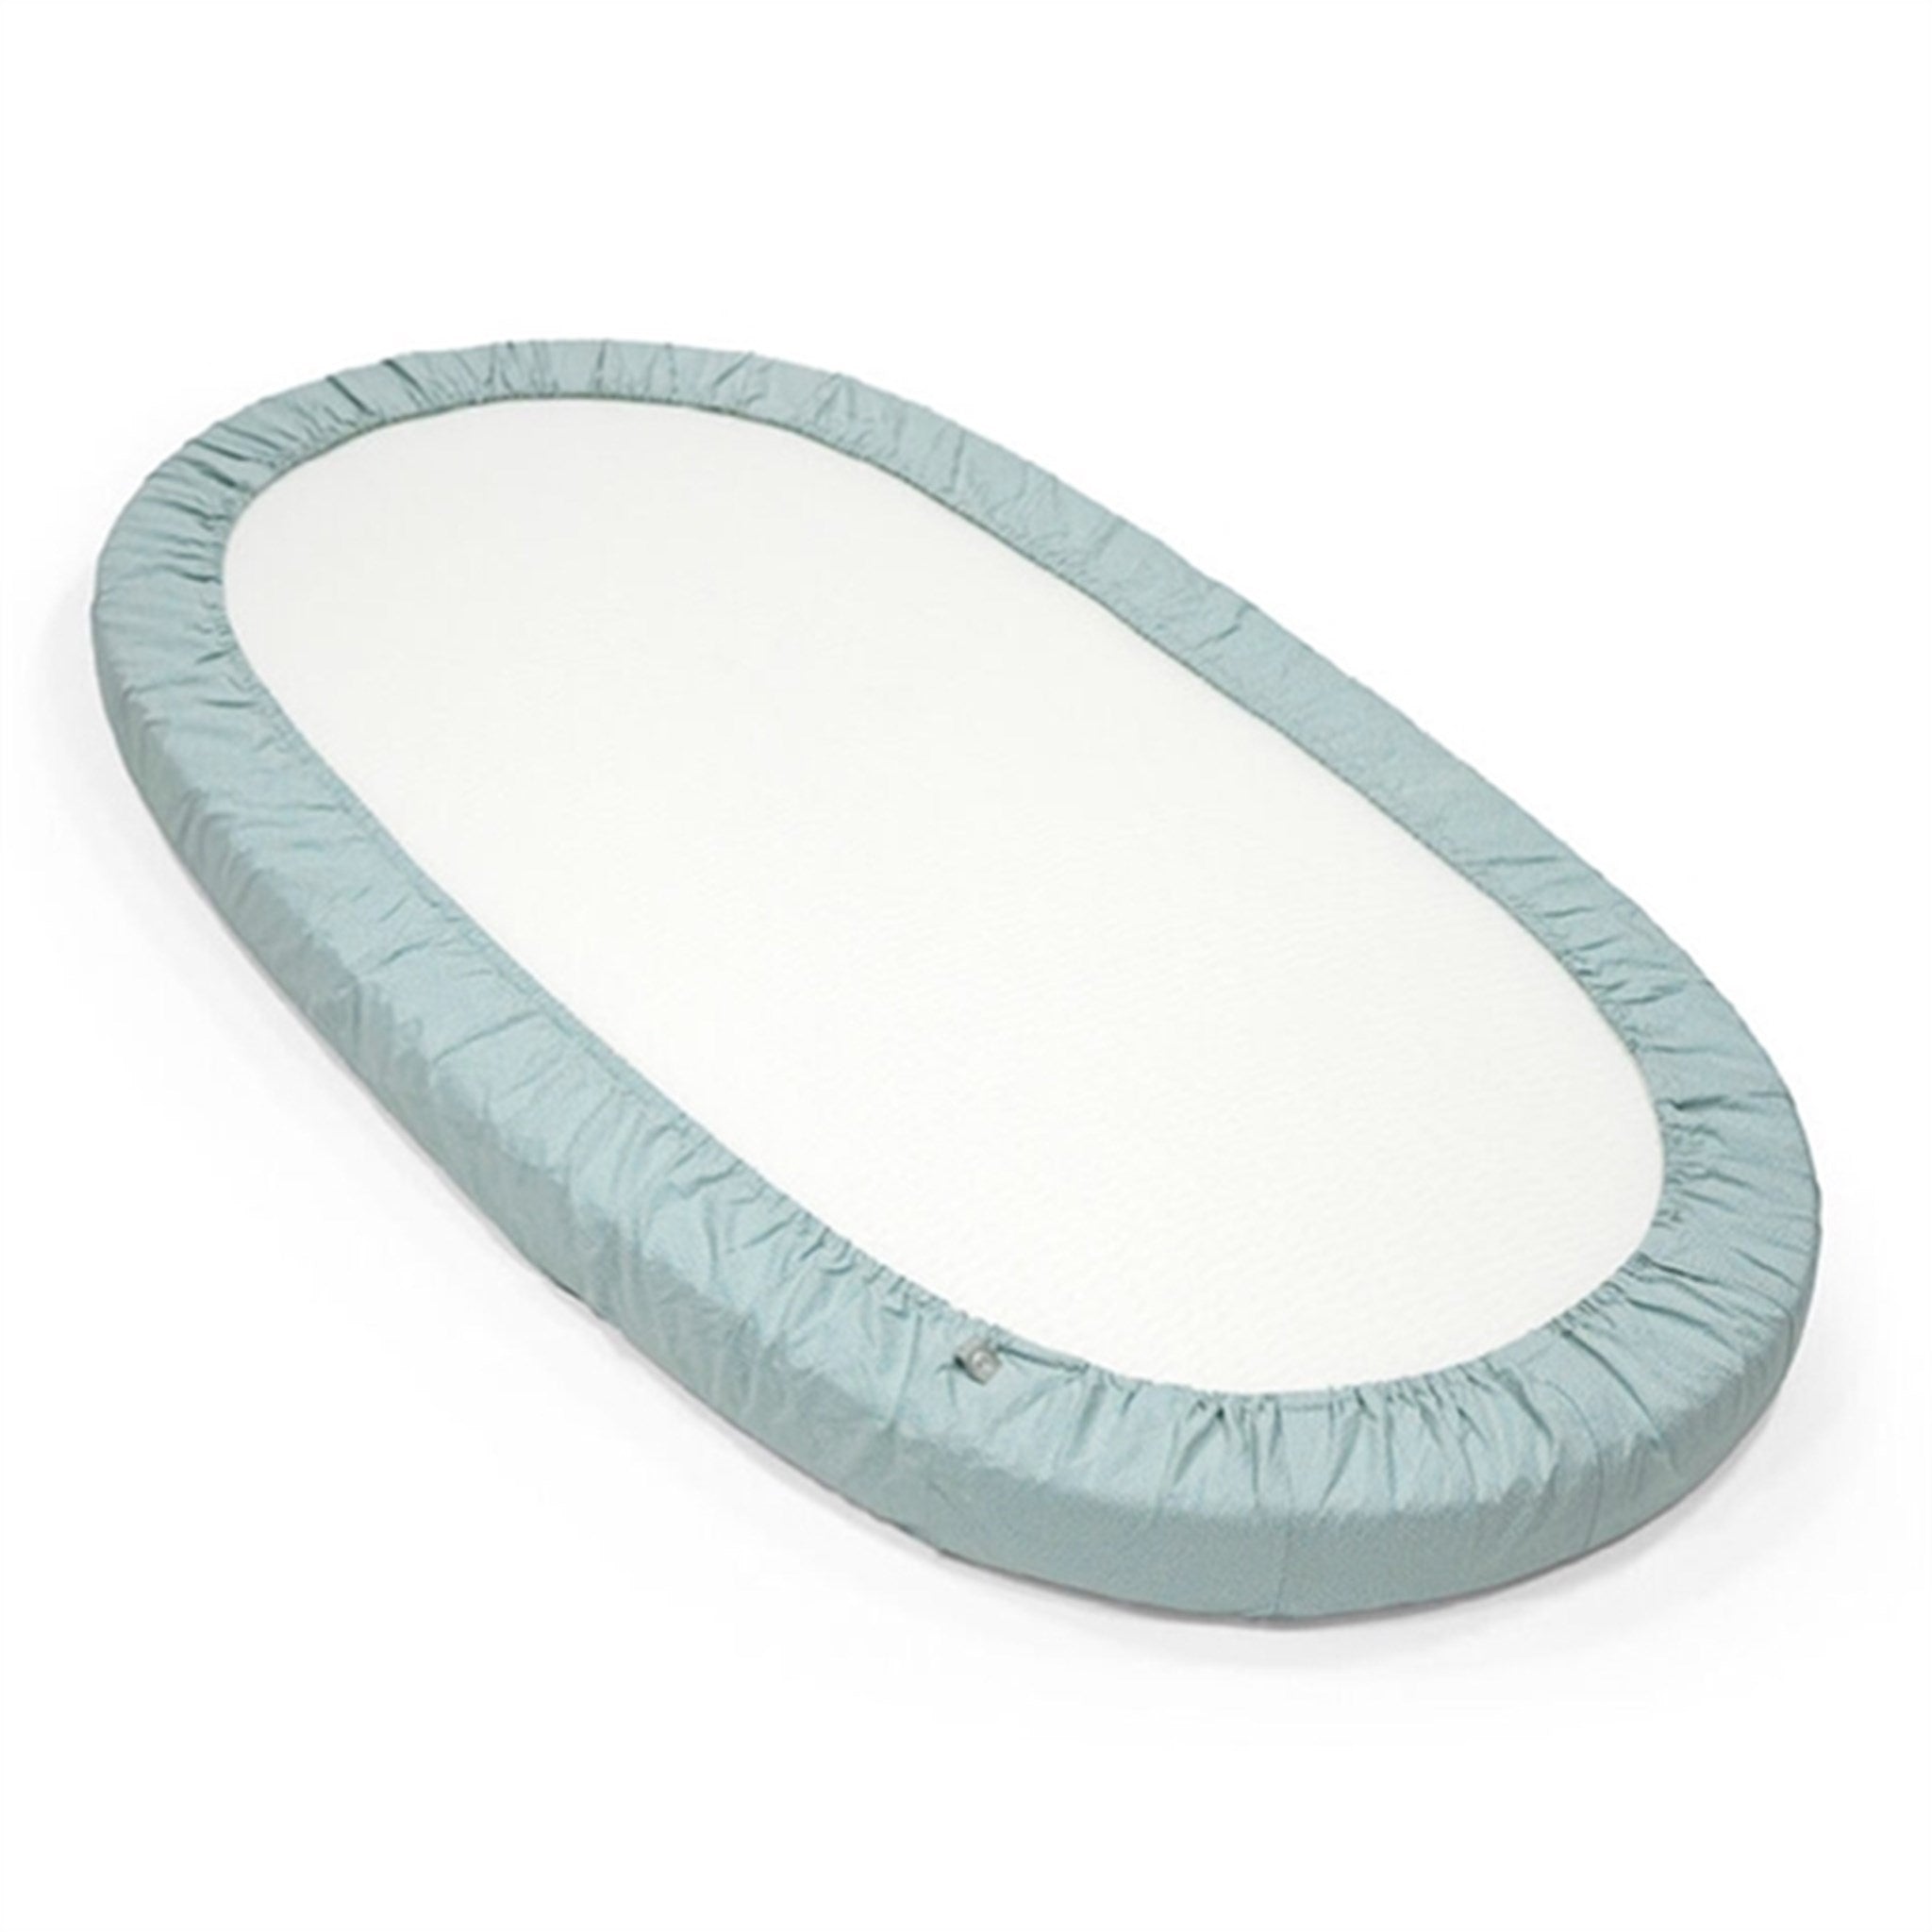 Stokke® Sleepi™ Bed Fitted Sheet White V3 2